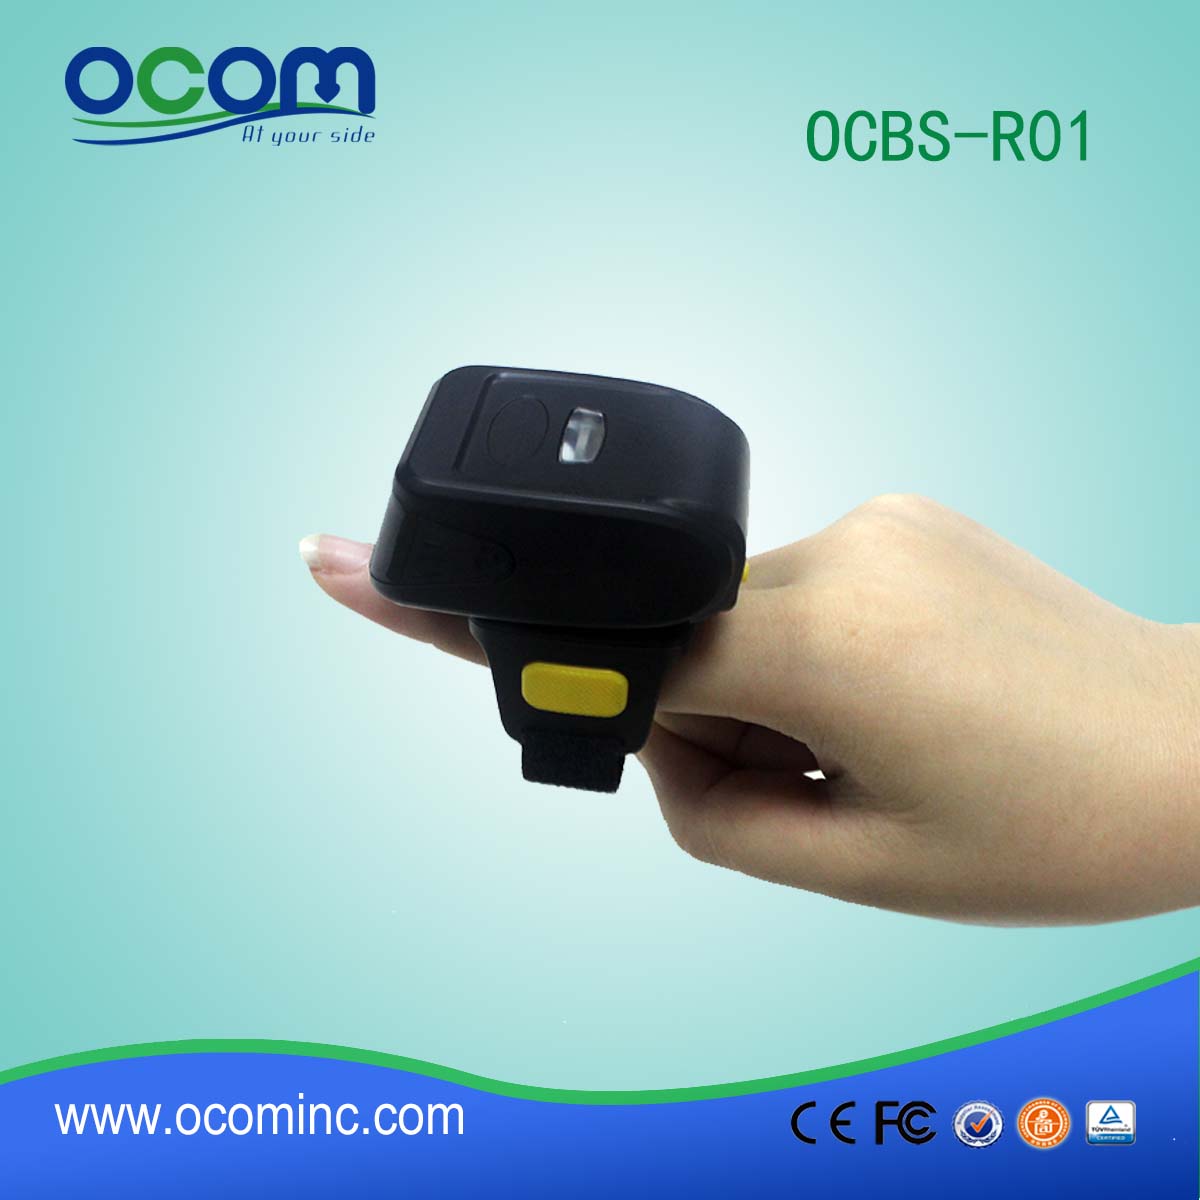 OCBs-R01 самая низкая цена маленькая и носимого Bluetooth считыватель штрих-кода